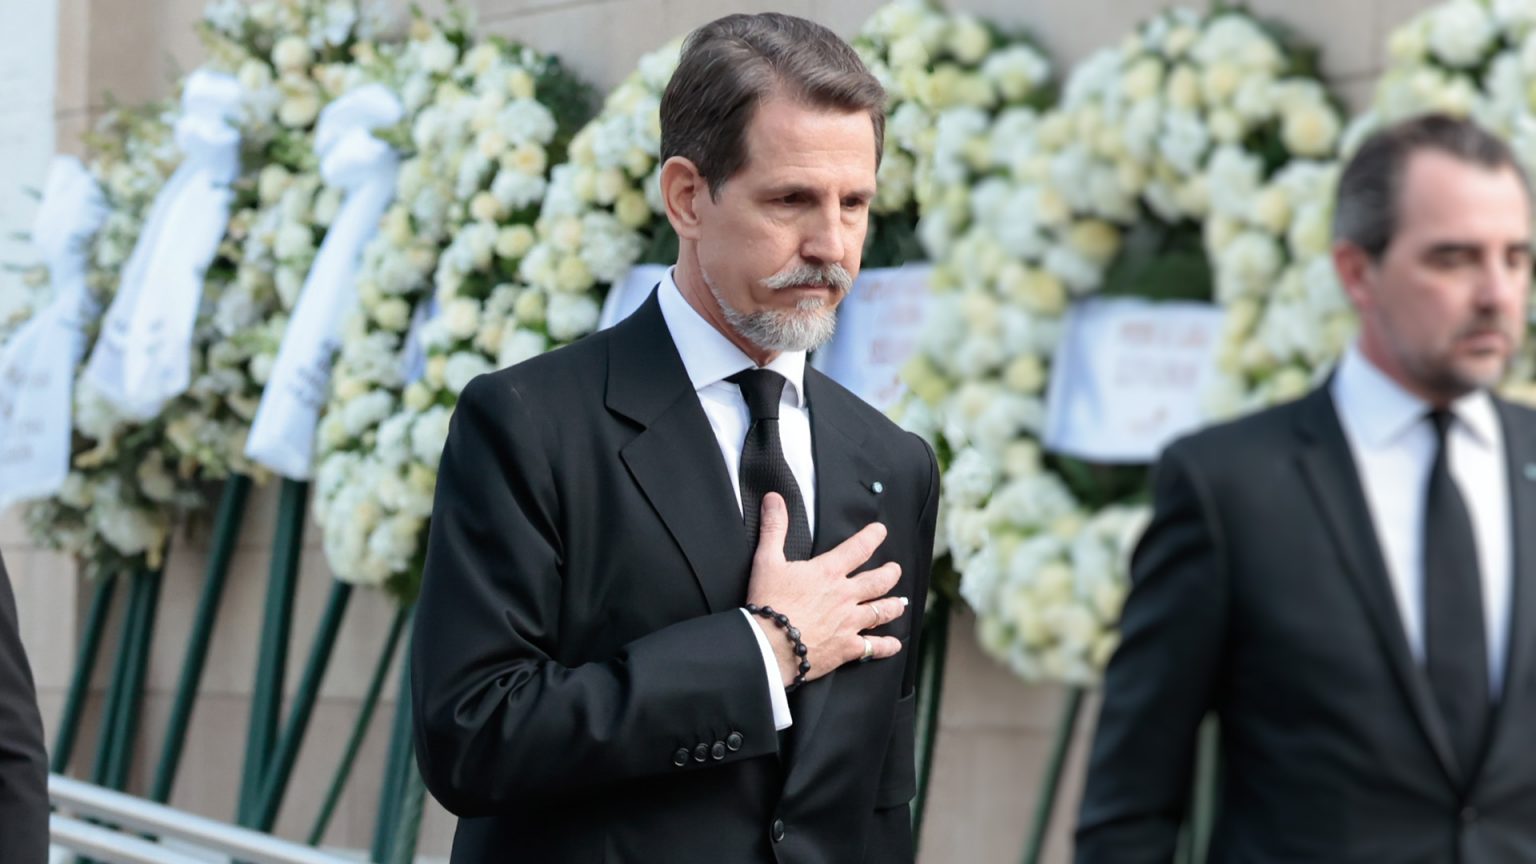 El emocionante elogio fúnebre de Pablo de Grecia que ha hecho llorar a todos: "Este no es el final"